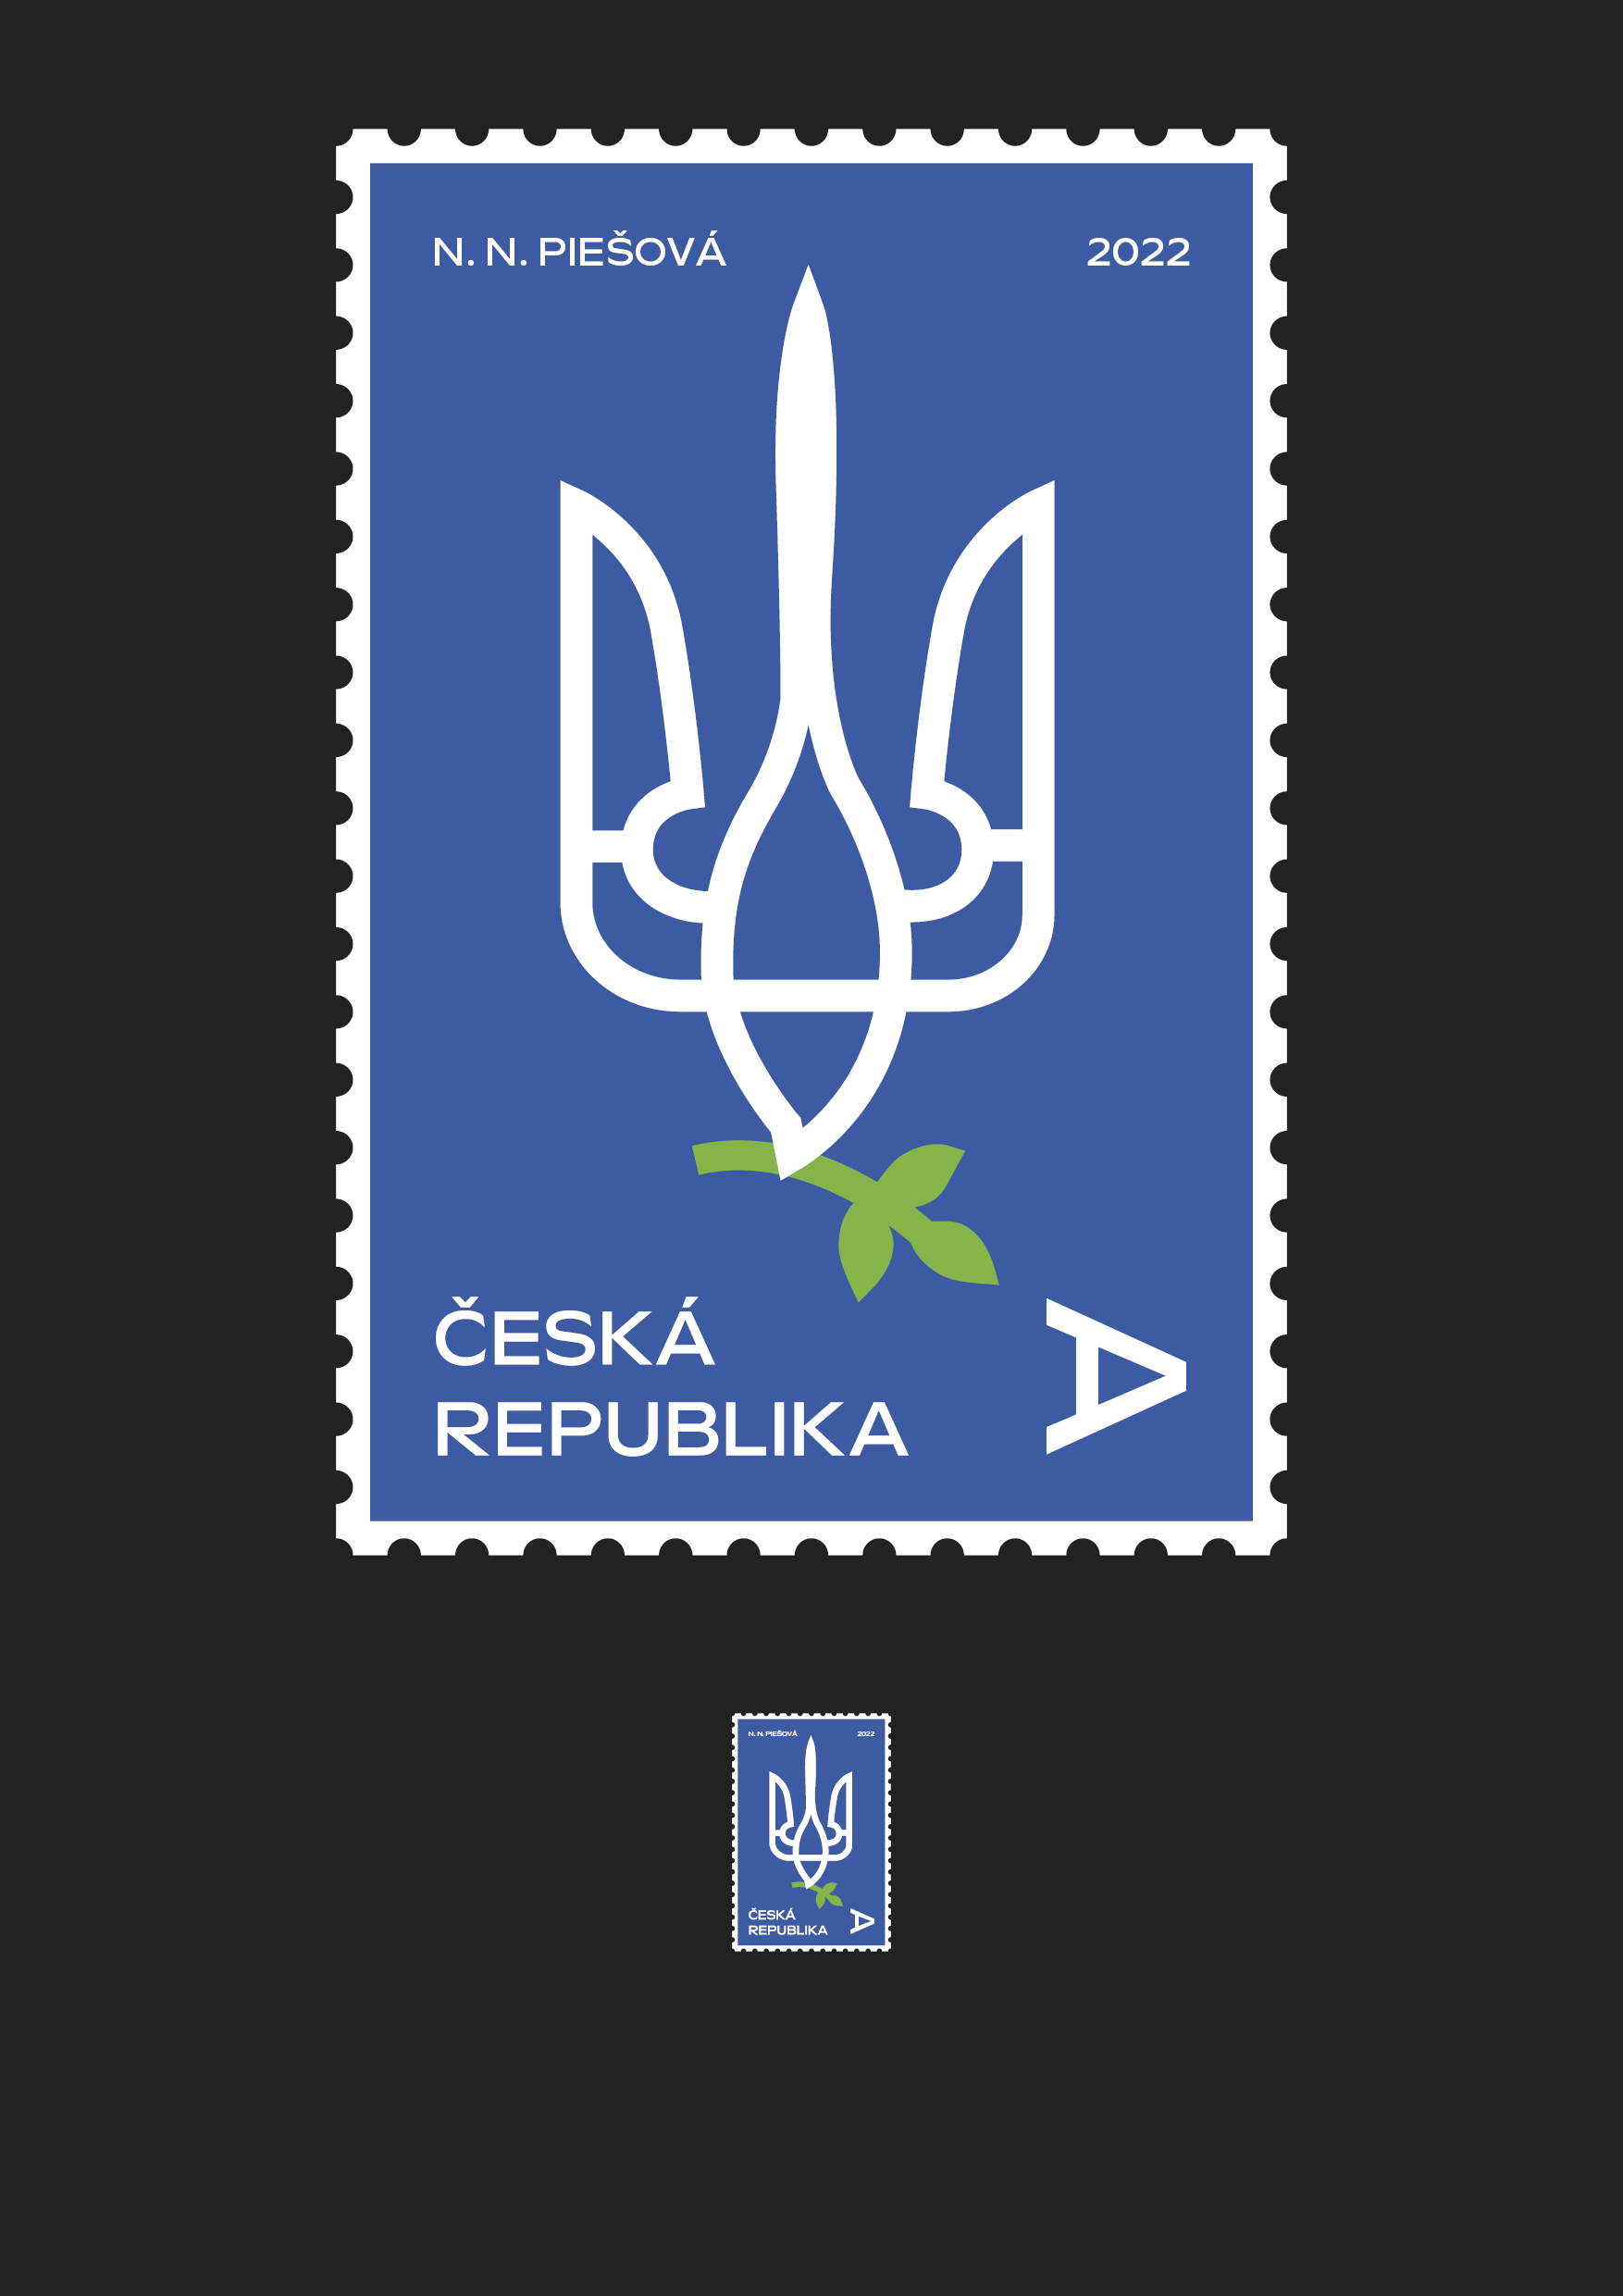 poštovní známka <br> na podporu Ukrajiny<br> 1. ročník 2021/2022<br> semestrální práce